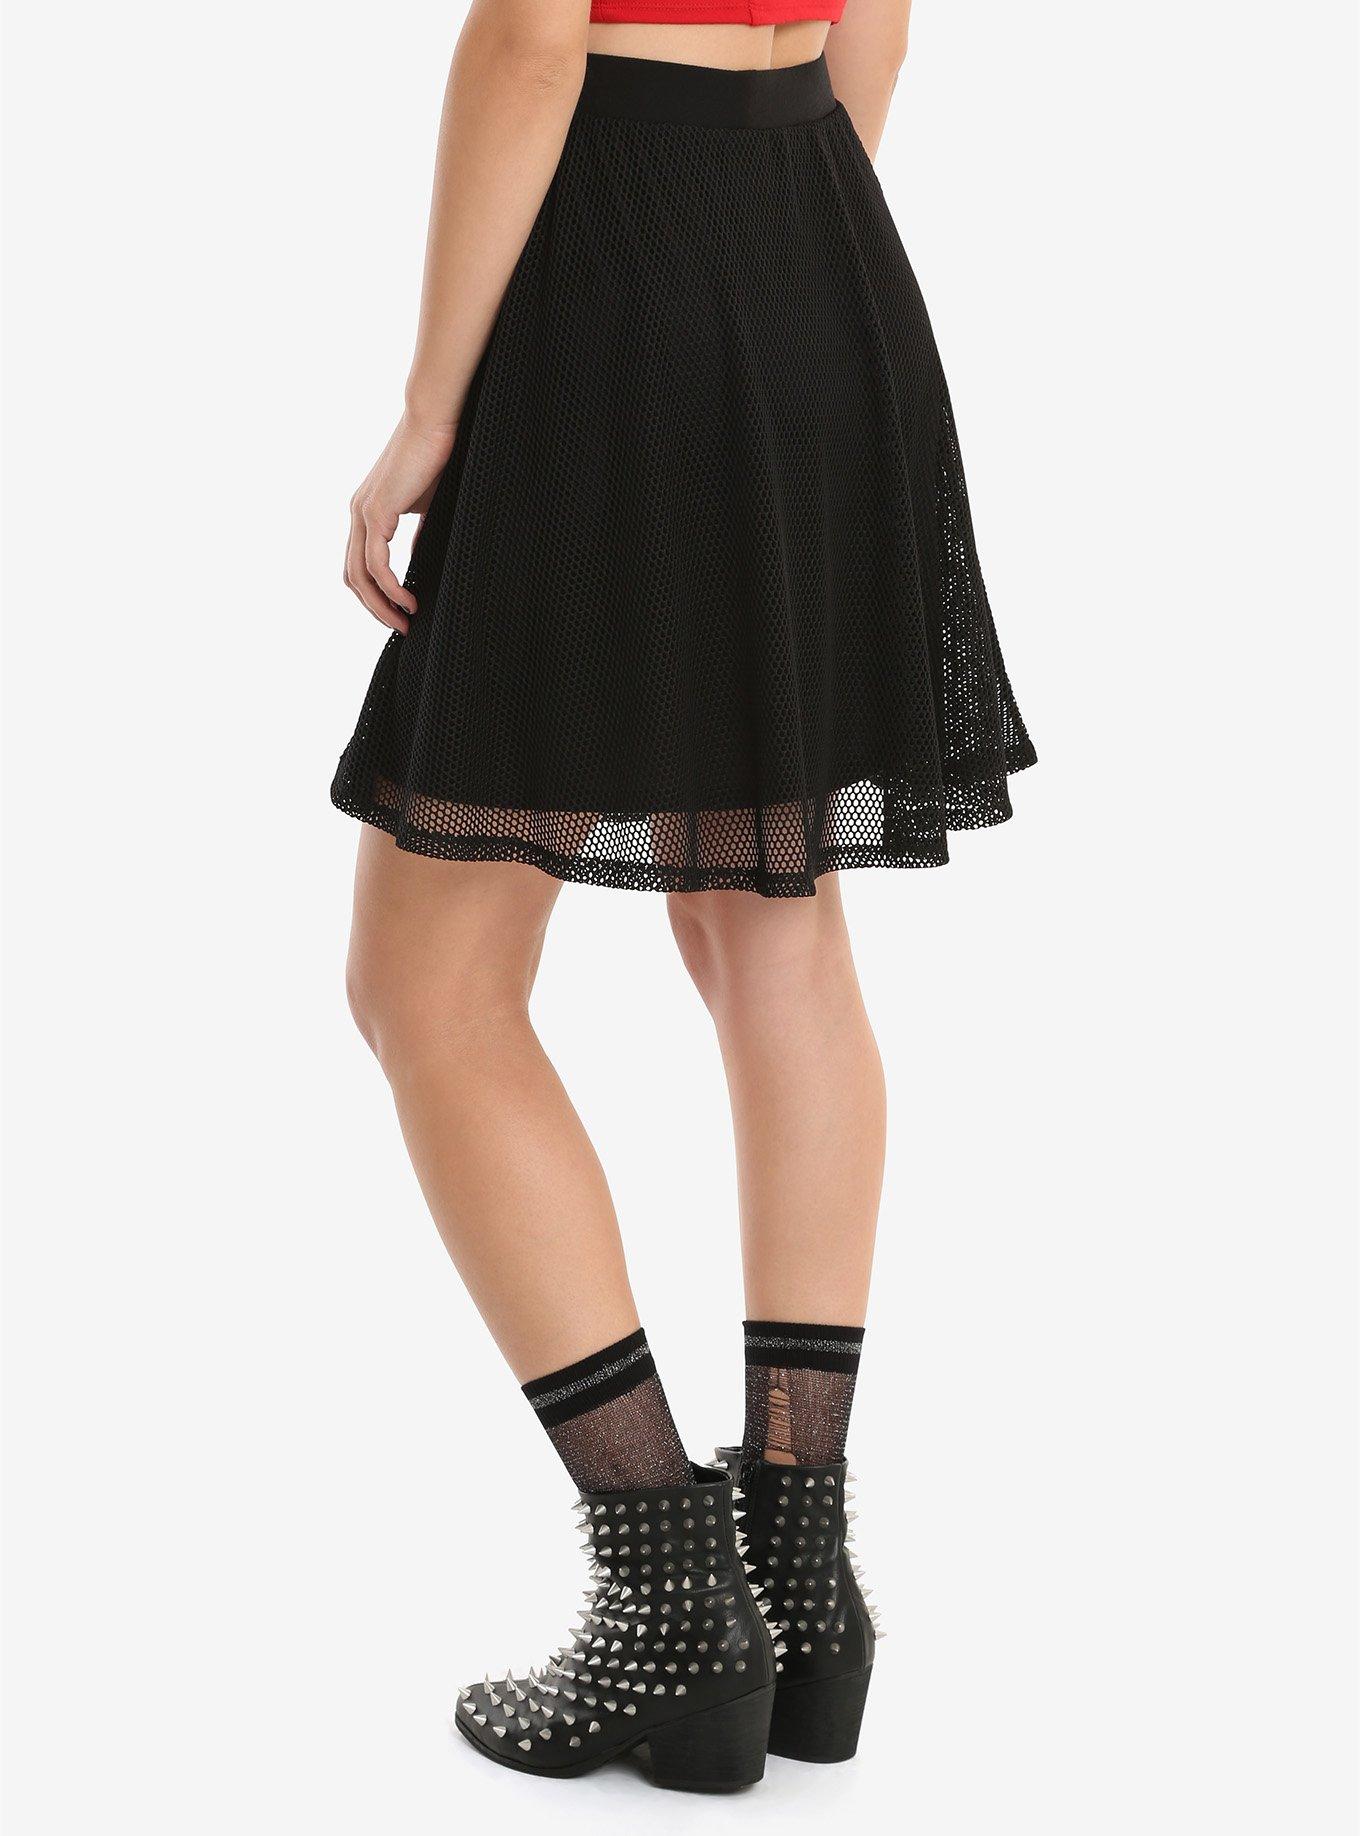 Black Fishnet Overlay Skirt, , alternate